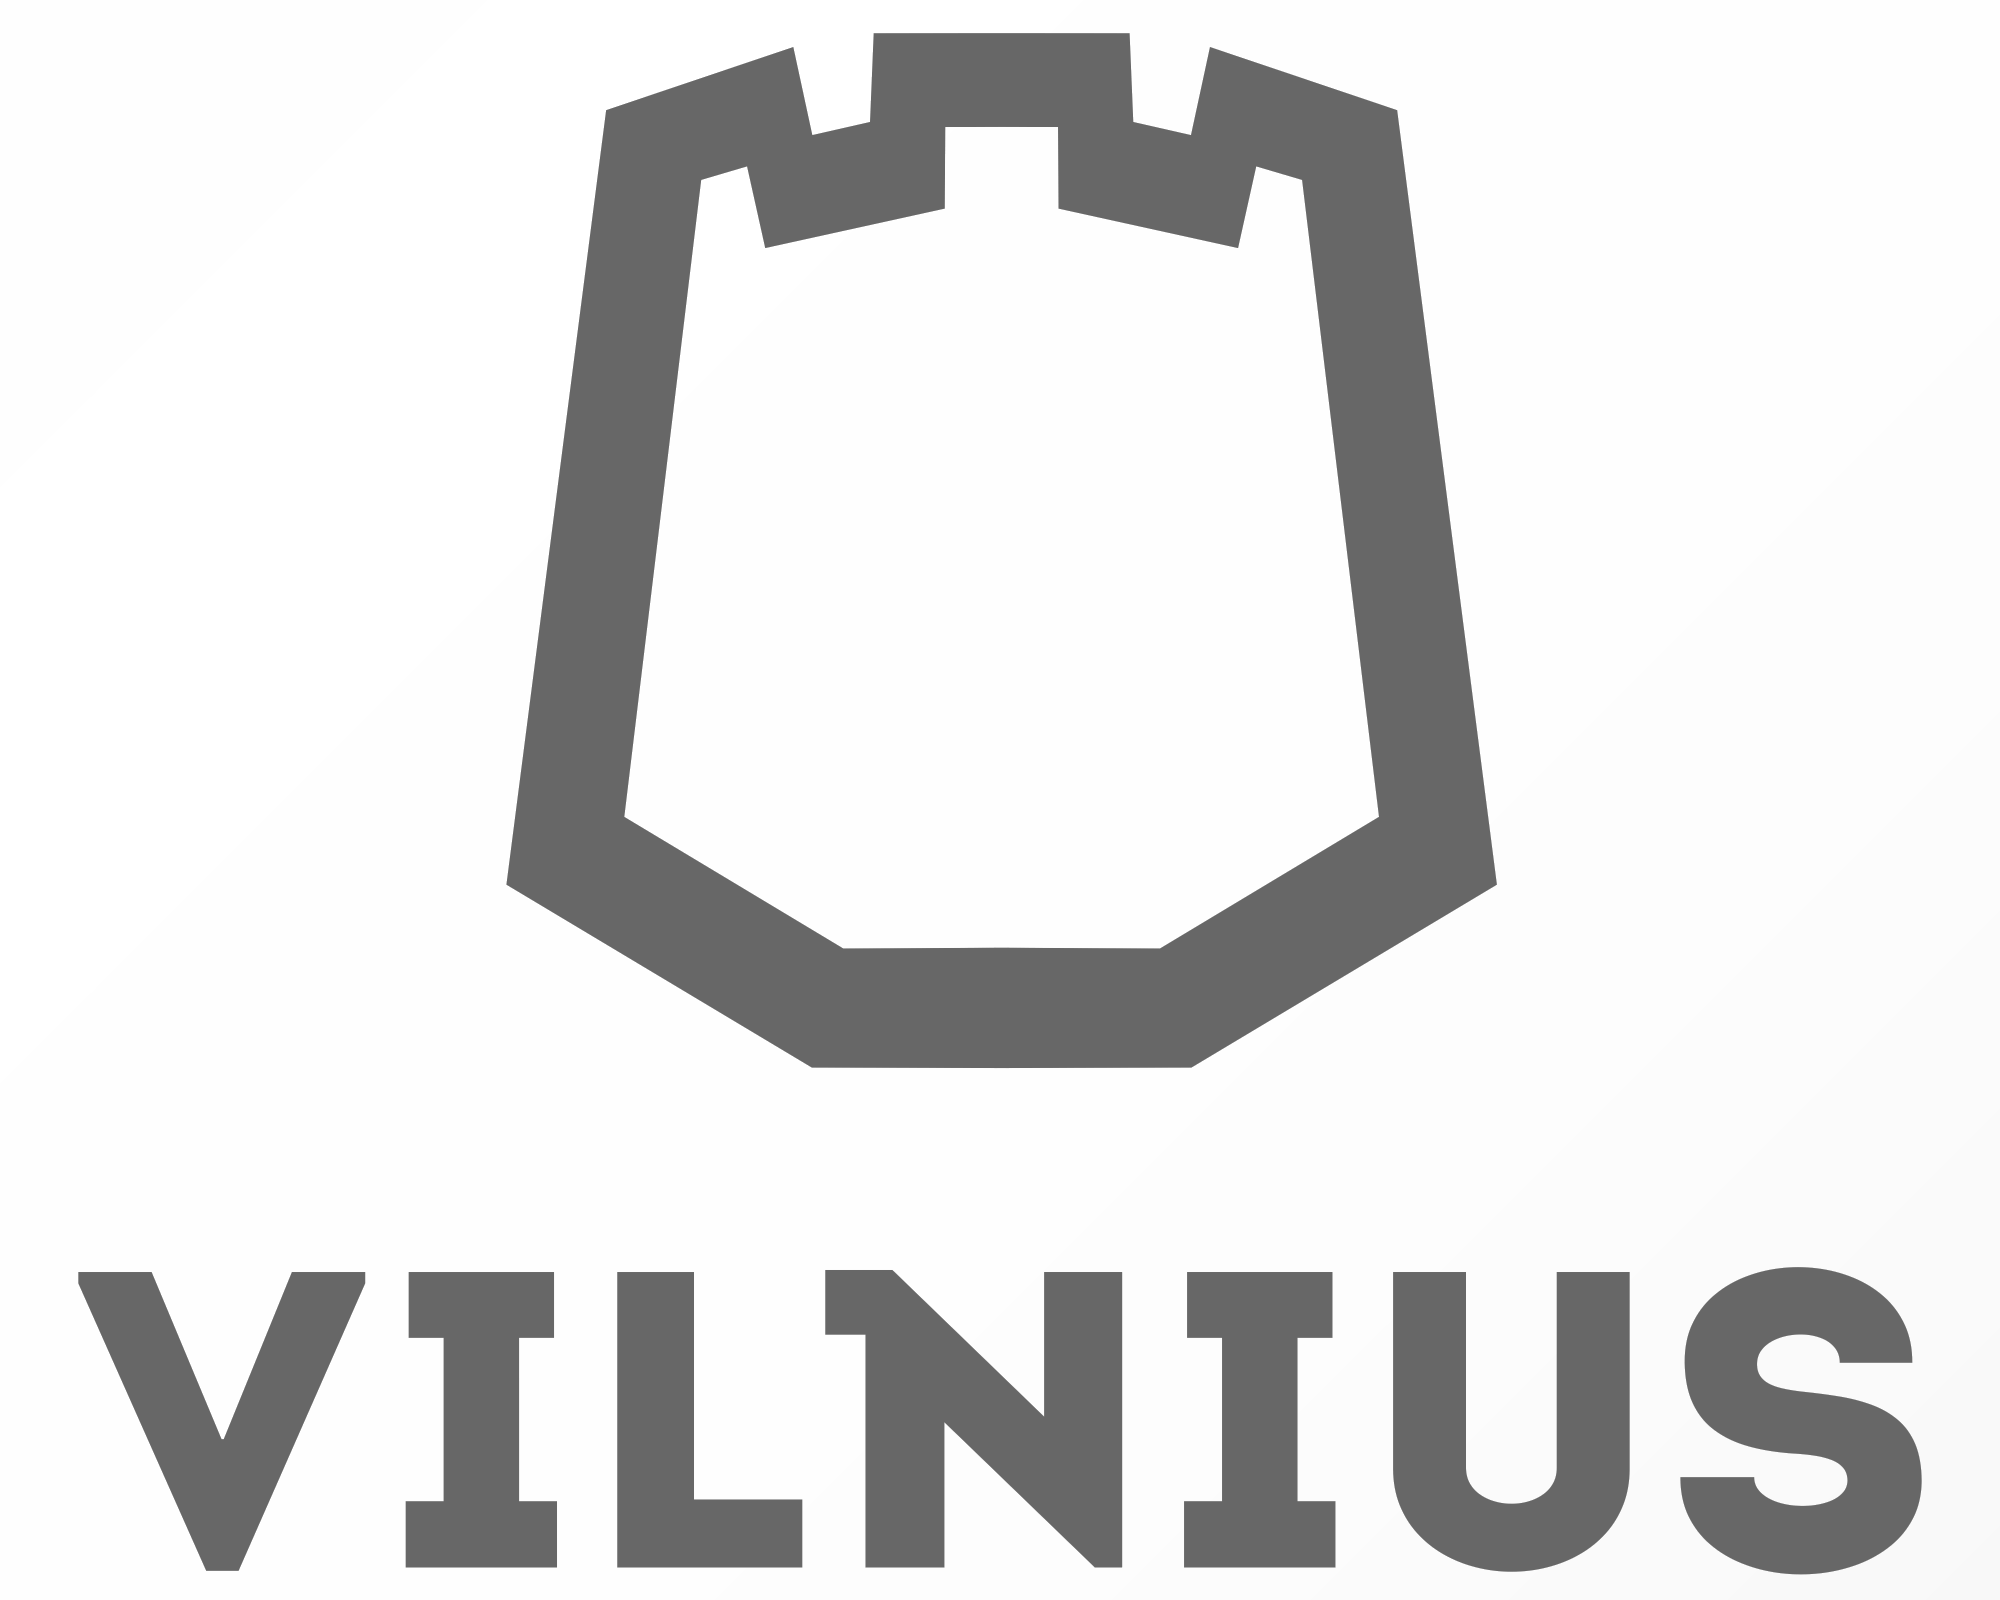 Vilnius city logo